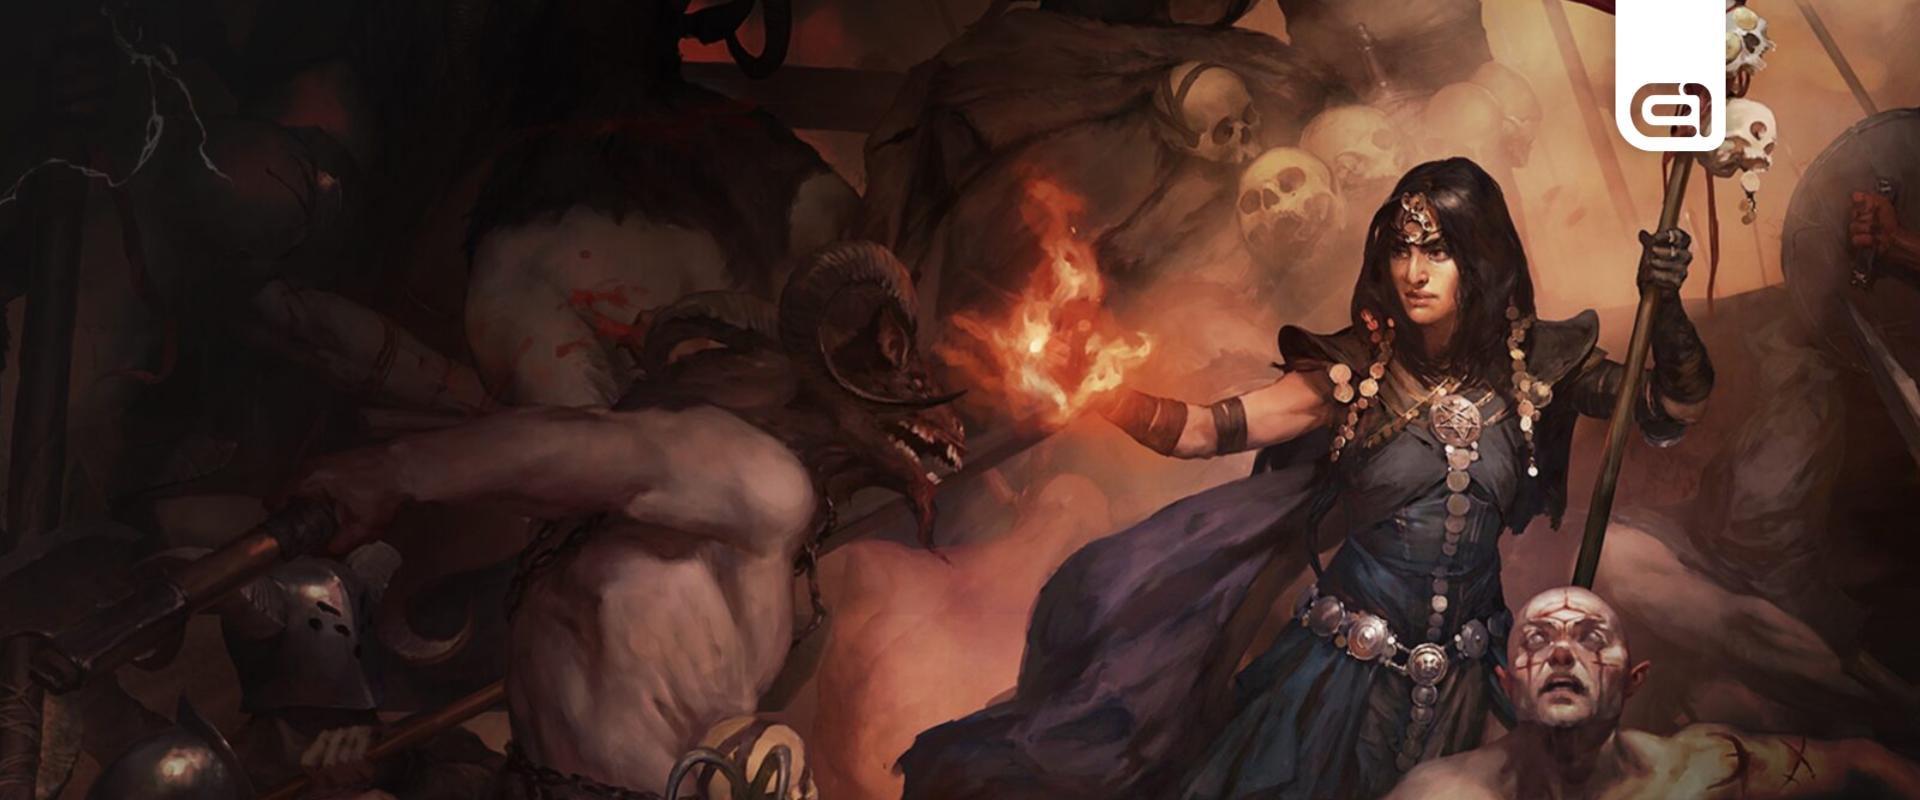 Végre megjelent a Diablo 4! - Így fogadták a játékot a legnagyobb streamerek